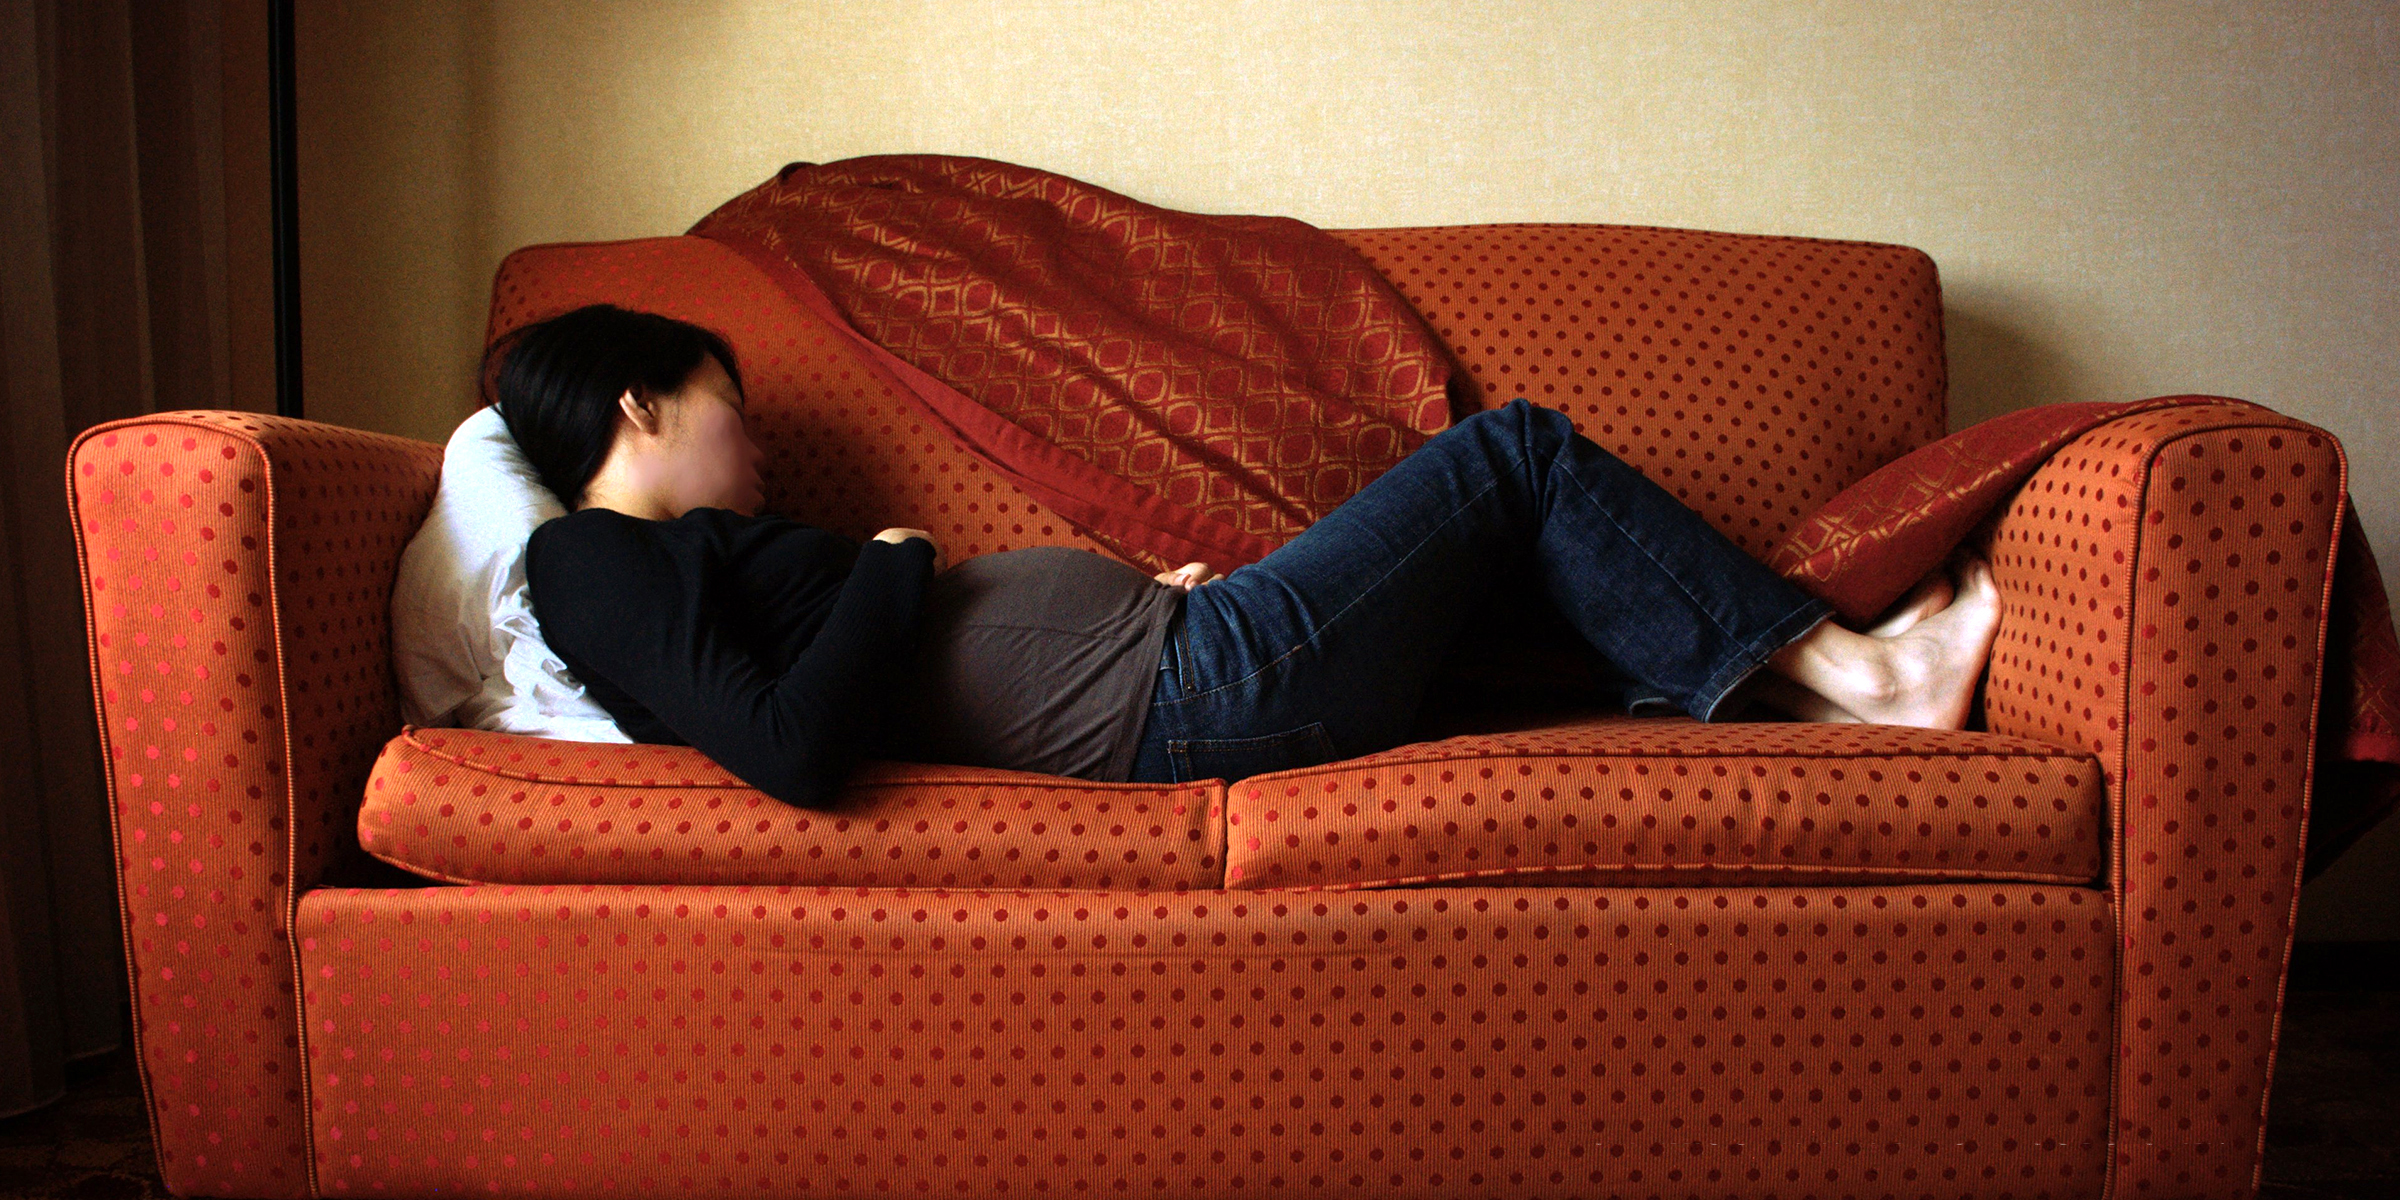 Una mujer embarazada dormida en el sofá | Foto: Flickr.com/koadmunkee (CC BY 2.0)